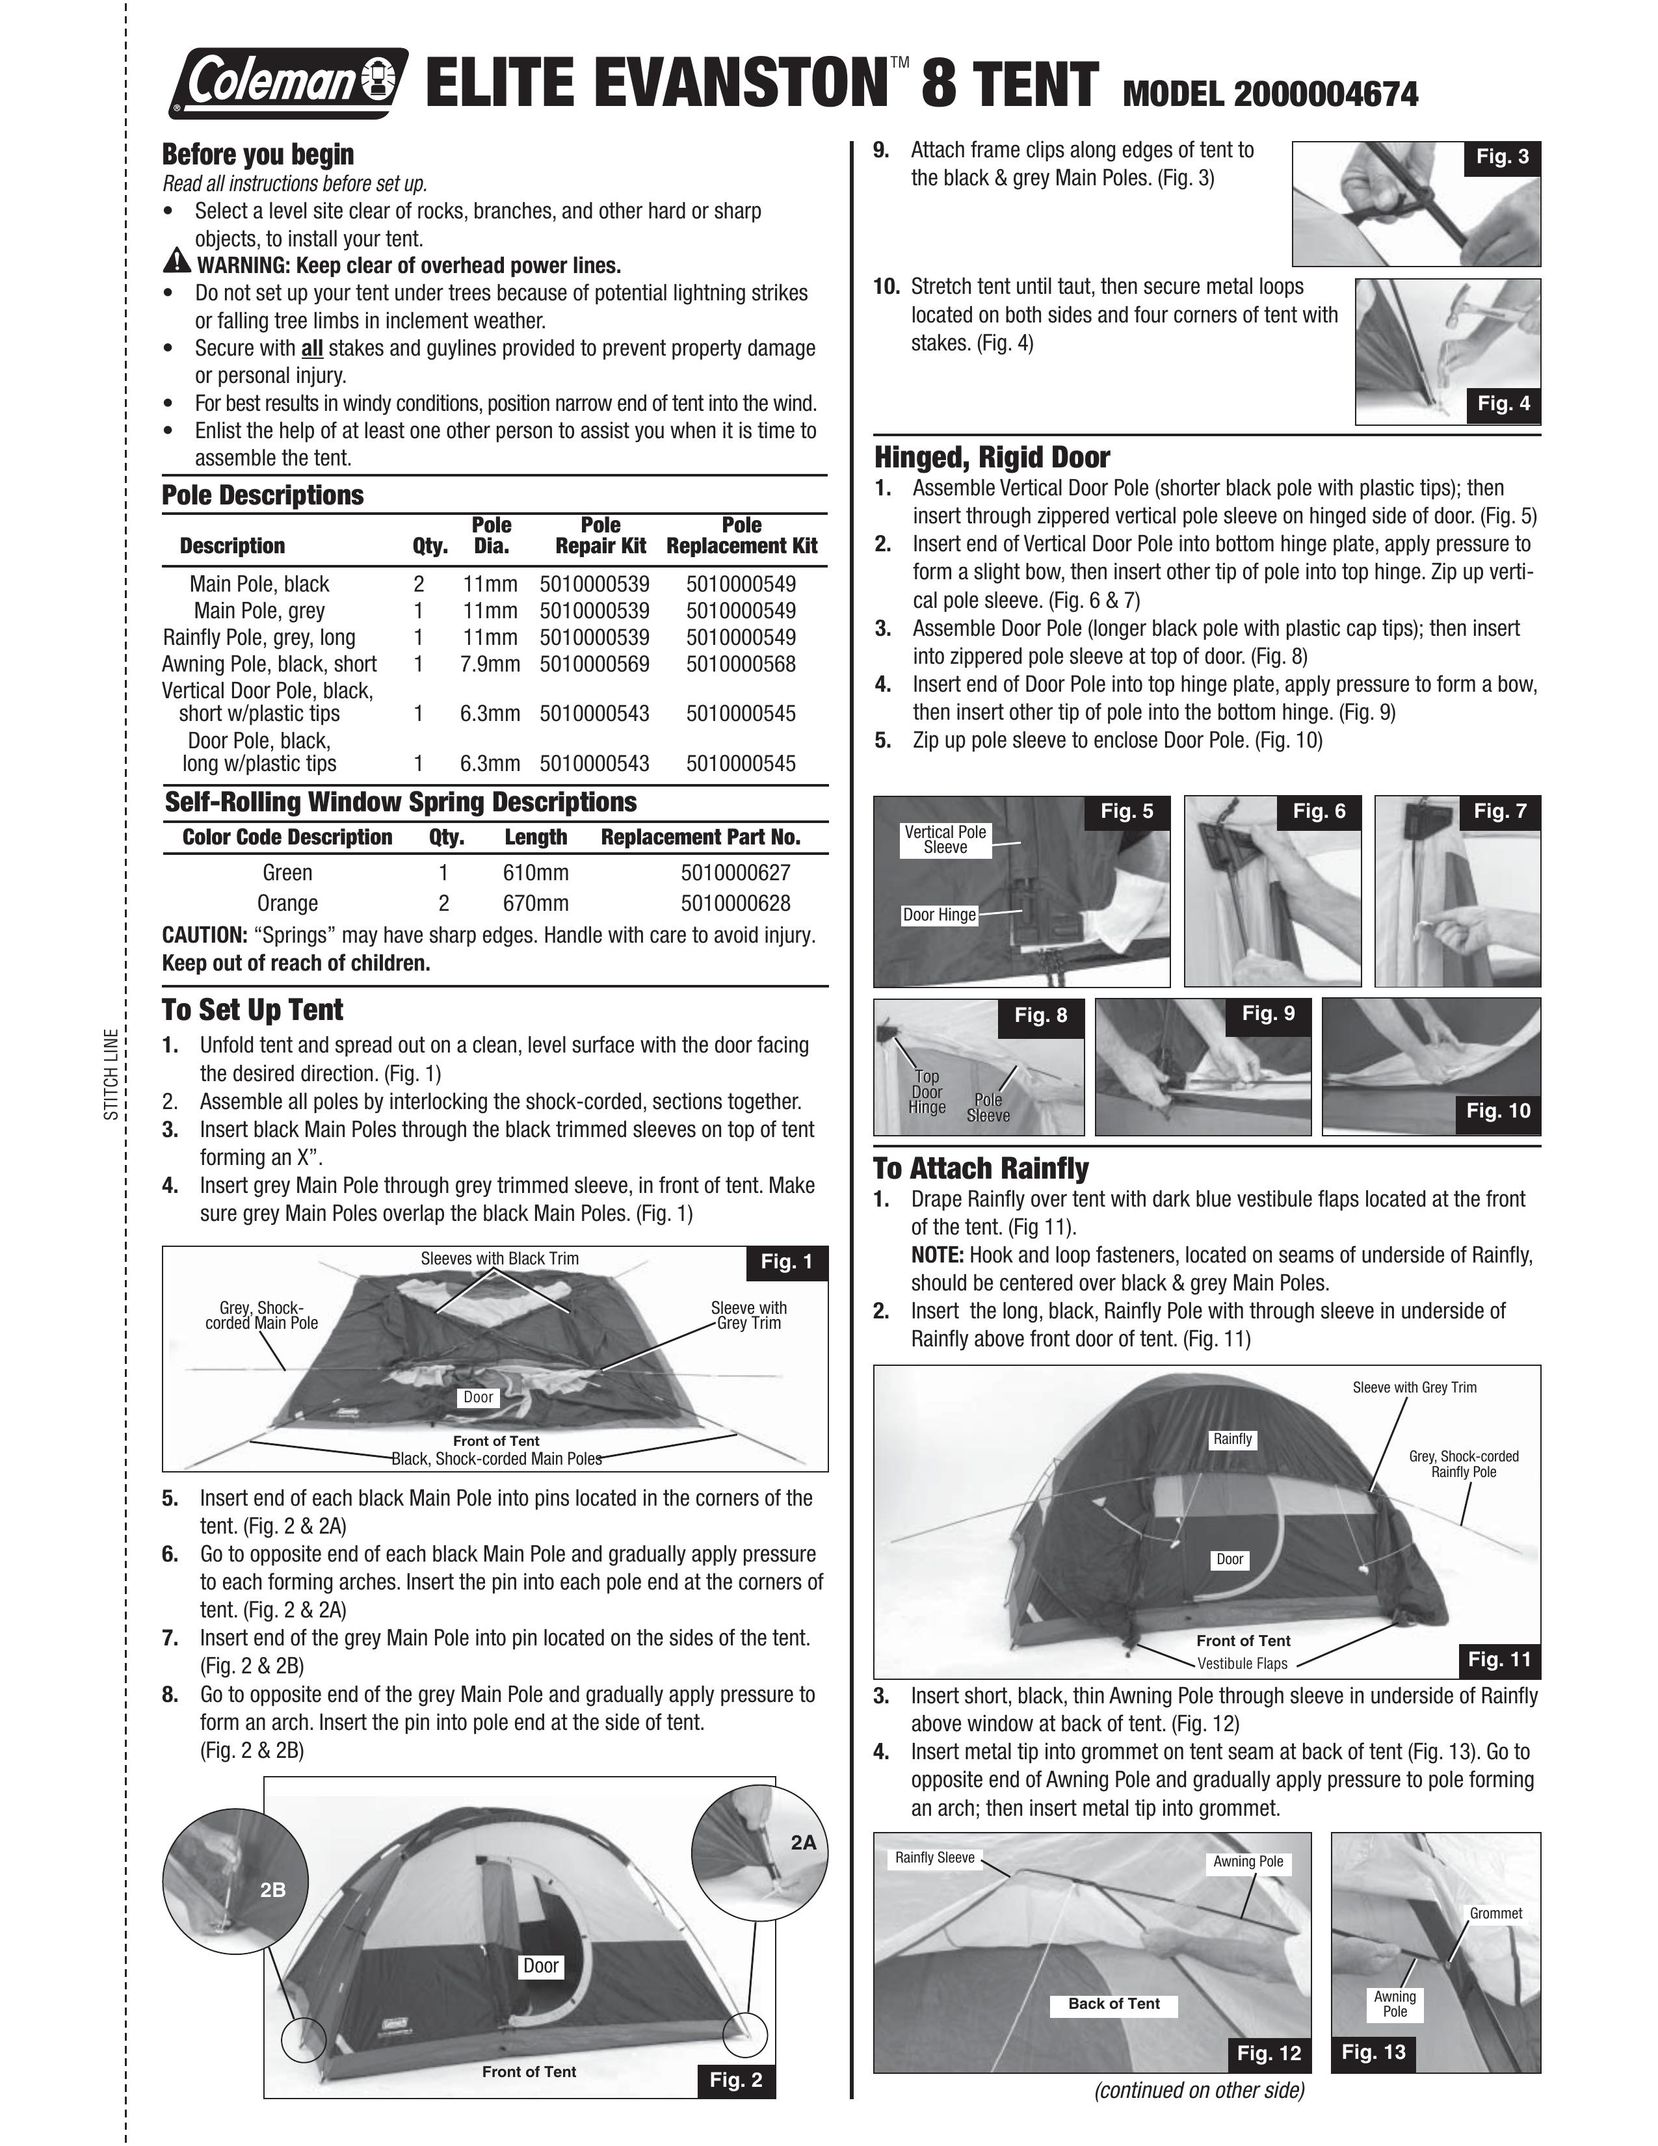 Coleman 2000004674 Tent User Manual